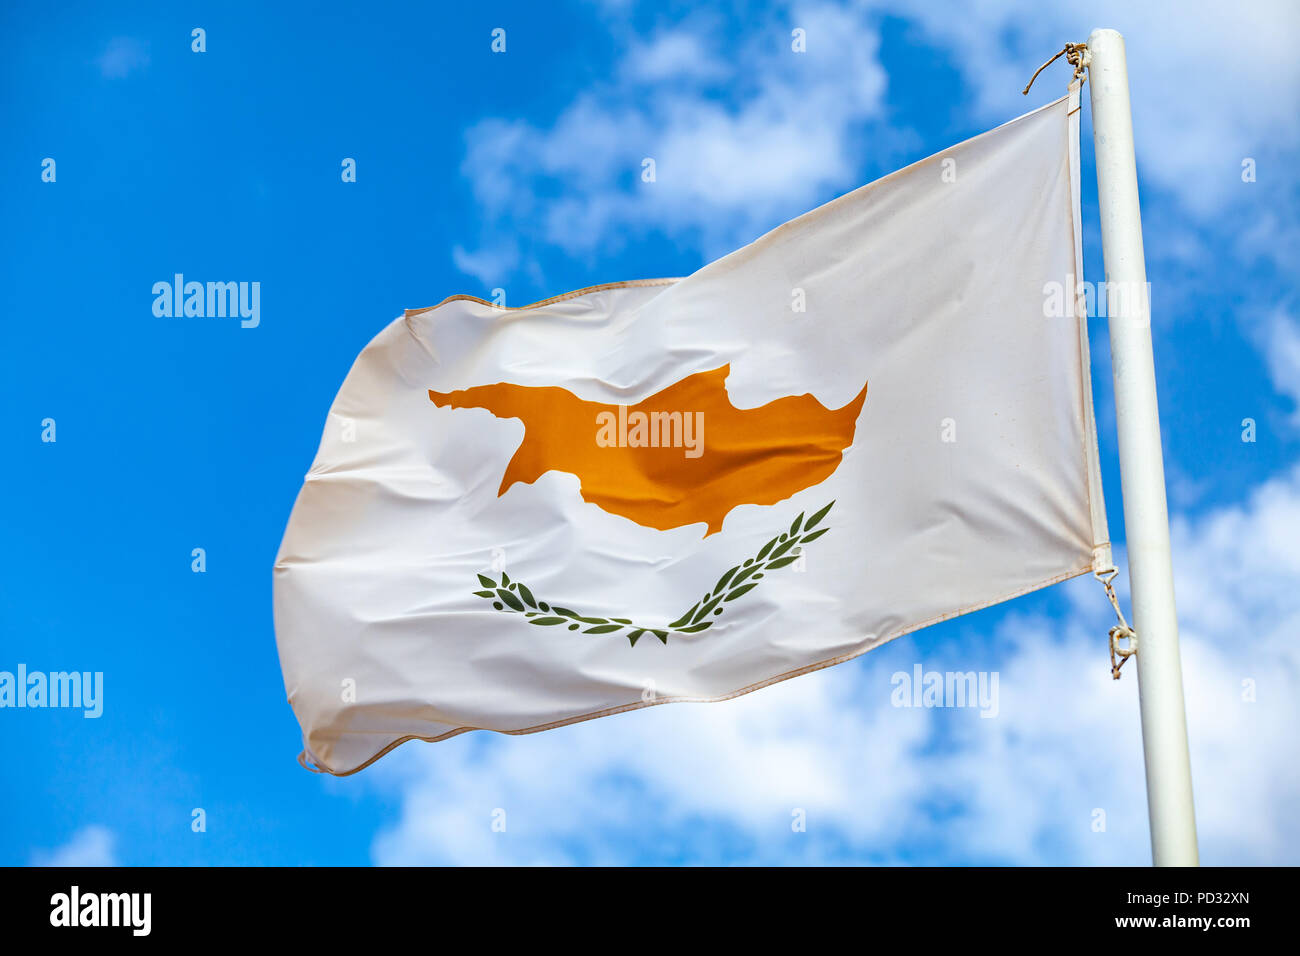 Brandissant le drapeau national de Chypre sur un mât plus nuageux ciel bleu Banque D'Images